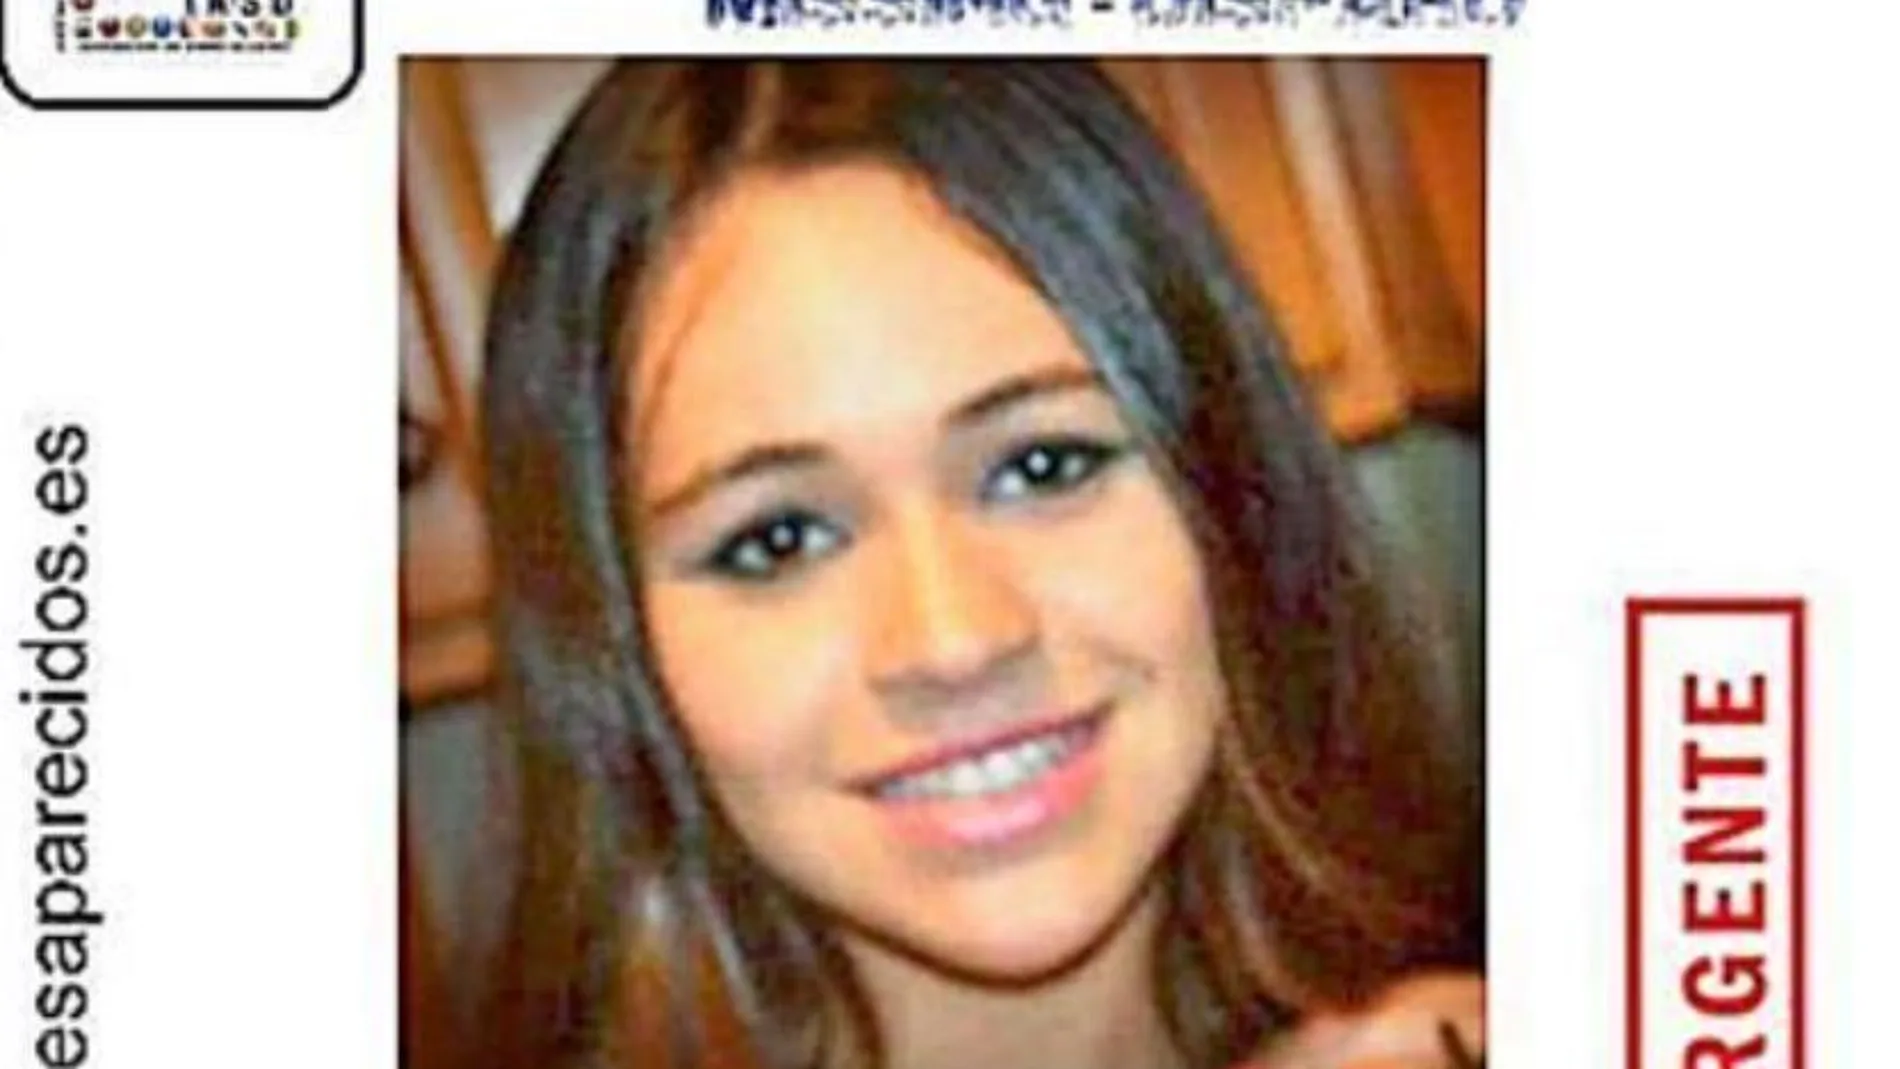 Malén Zoe Ortiz desapareció el 2 de diciembre de 2013, cuando tenía 15 años de edad